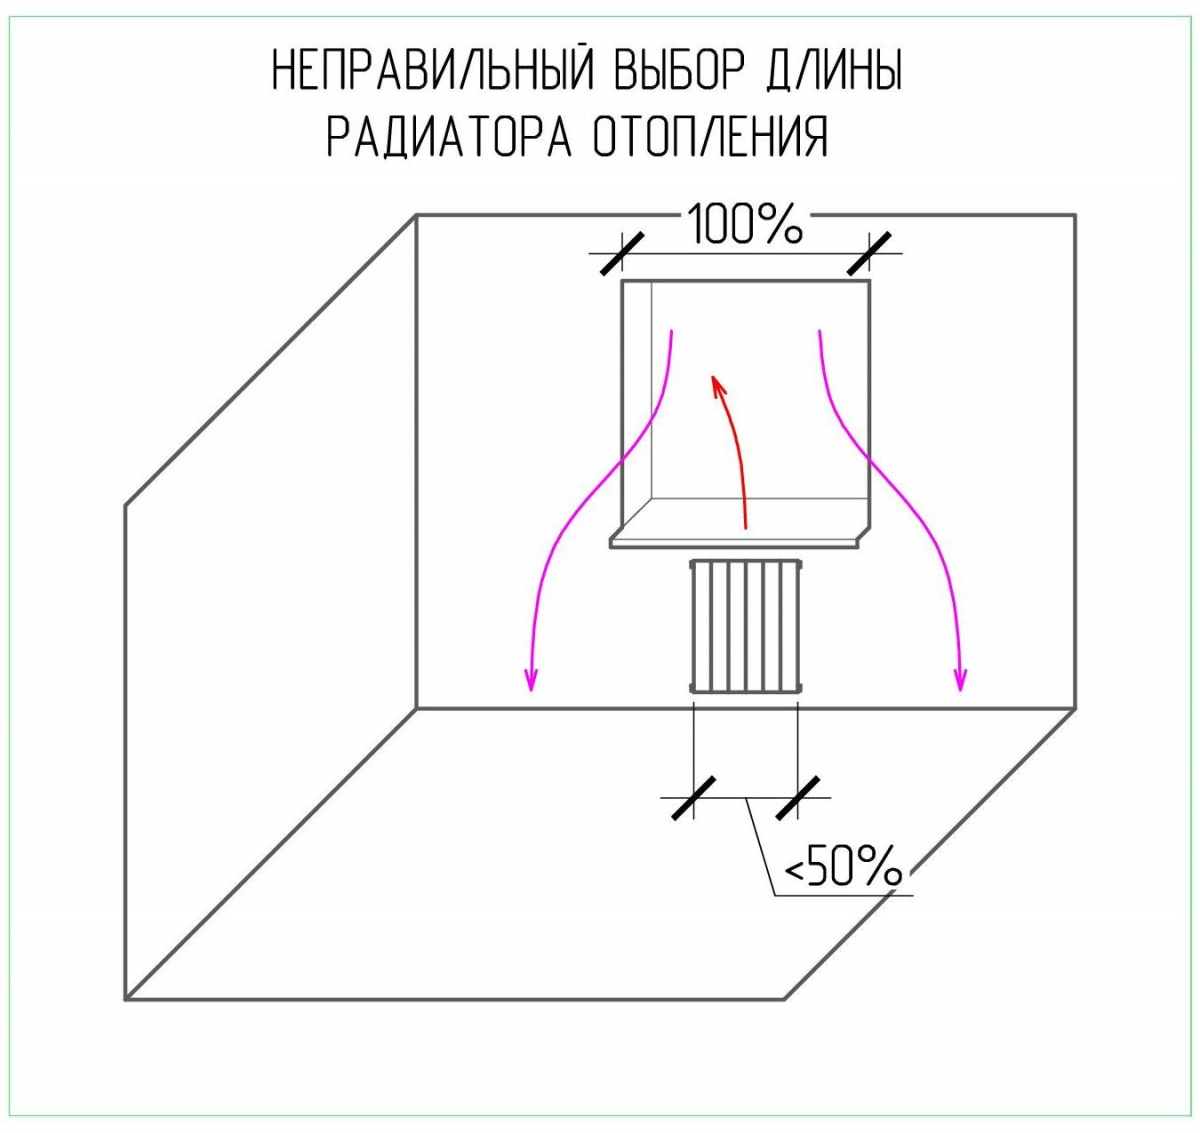 Рисунок радиатора отопления с указанием неверной длины радиатора